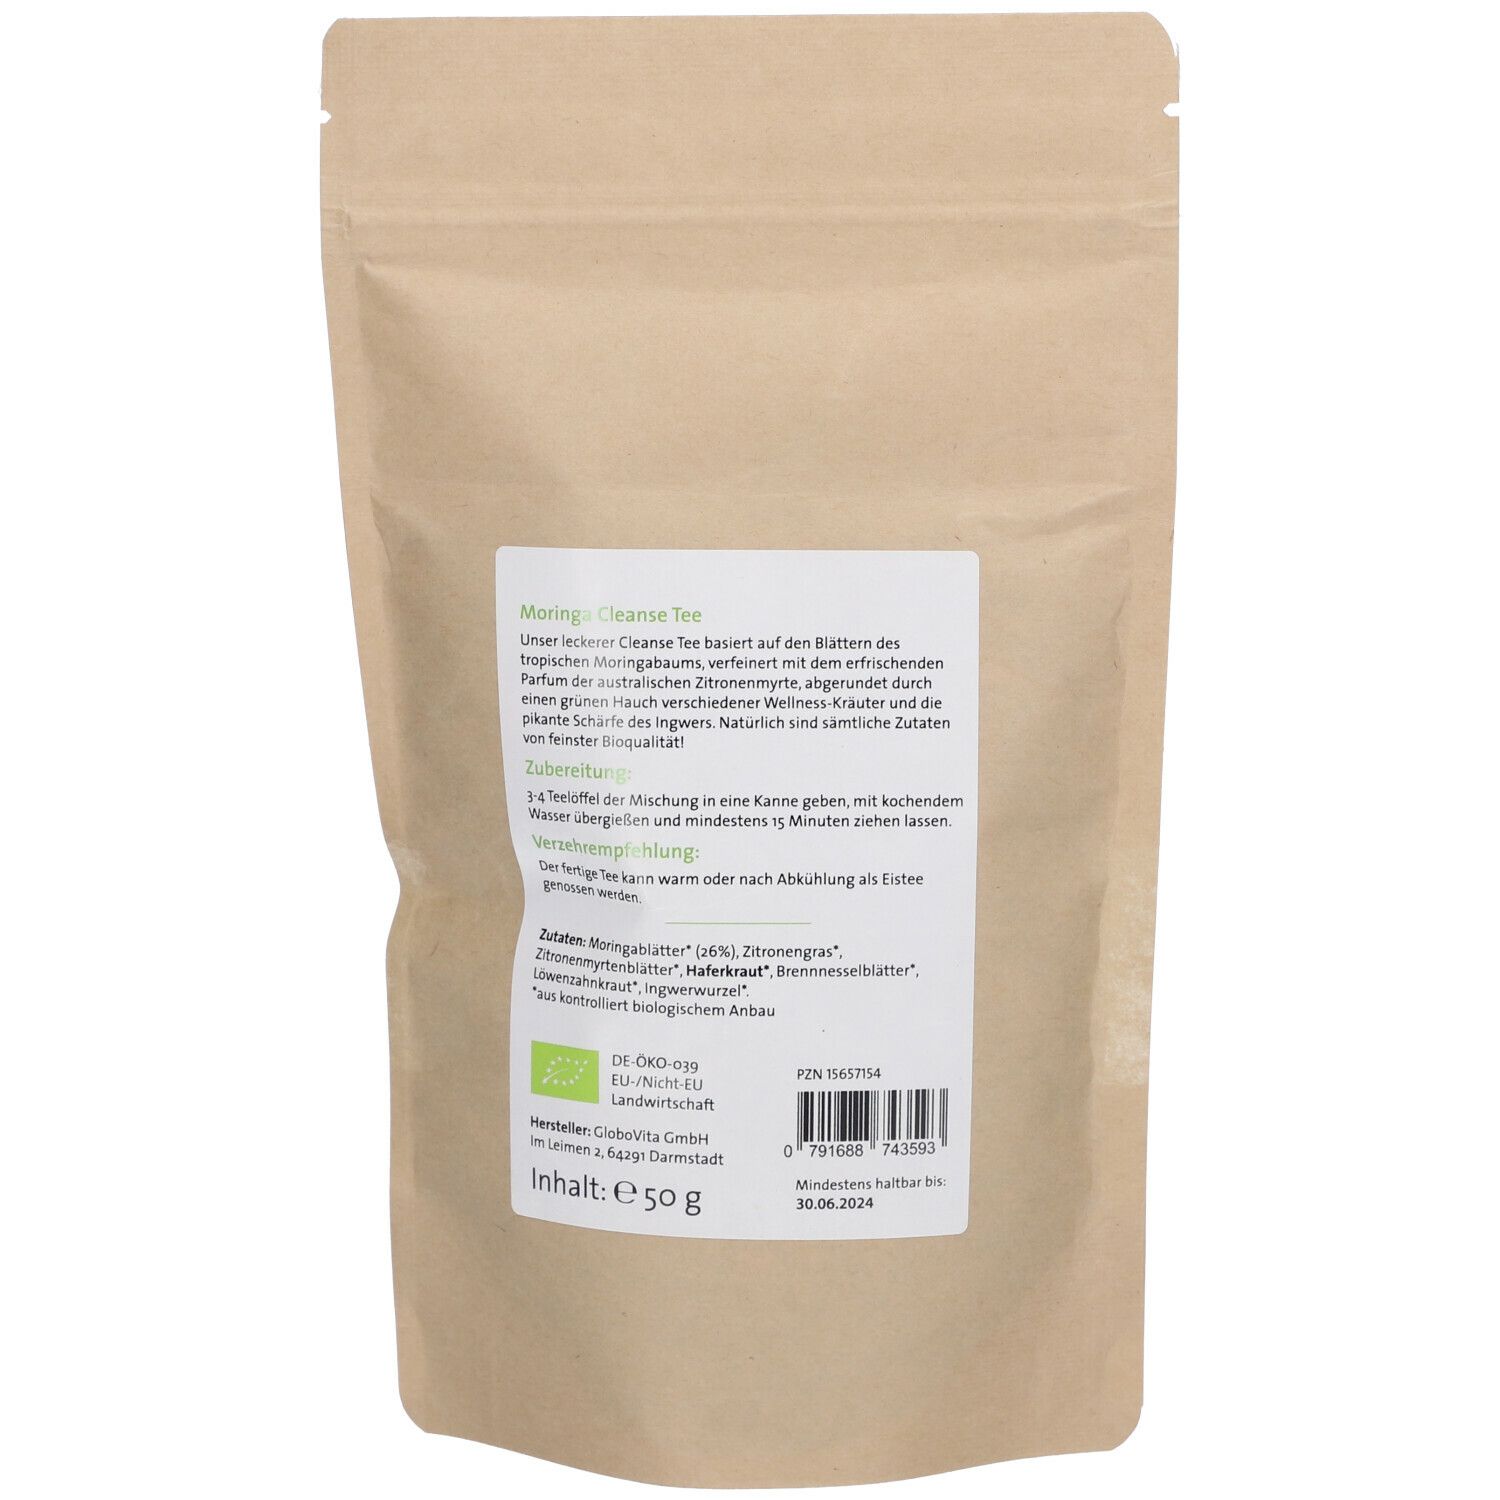 duówell® Moringa Cleanse Tee Bio